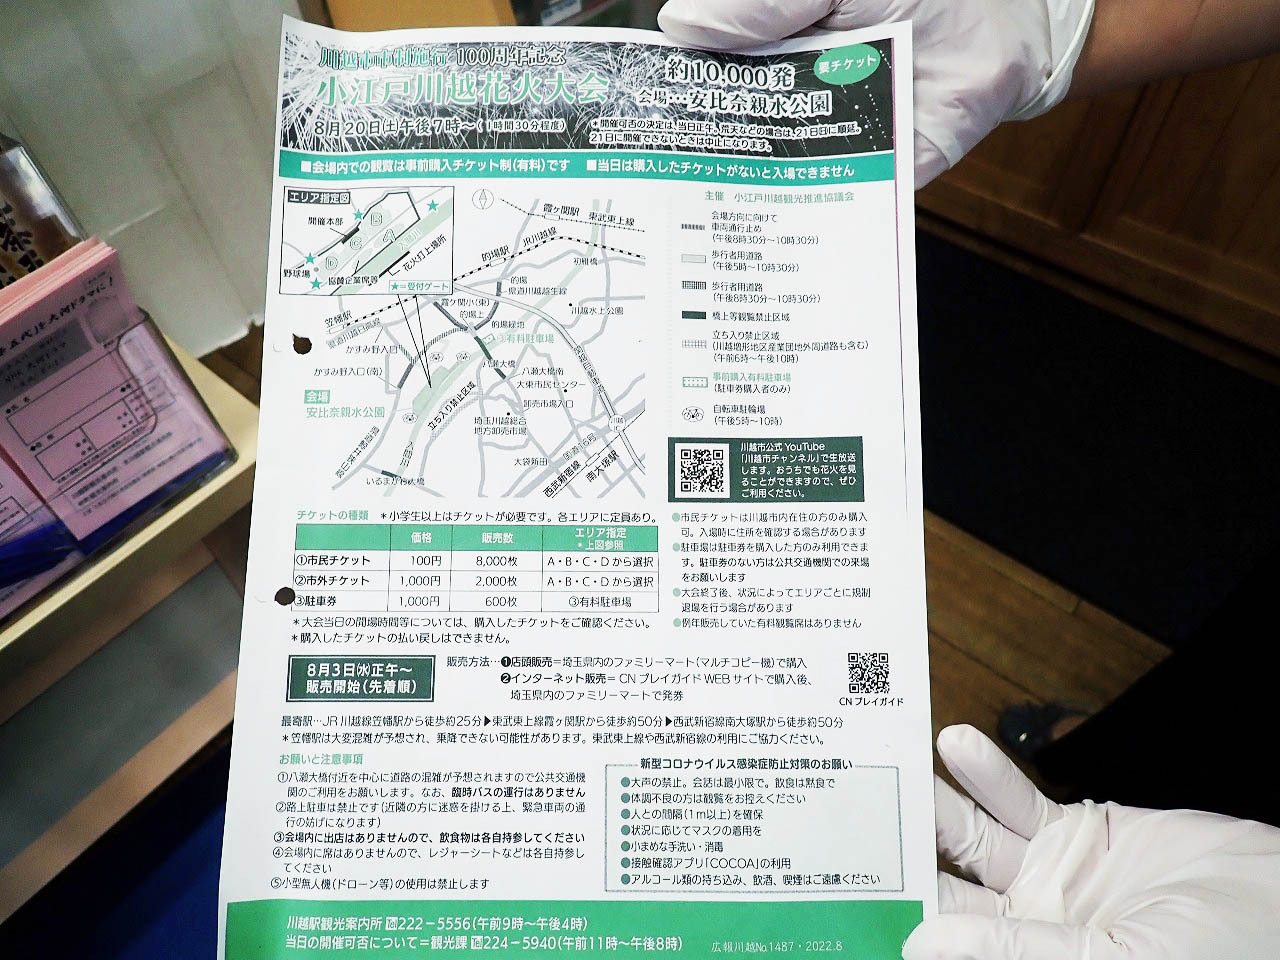 こちらが小江戸花火大会のパンフレットです